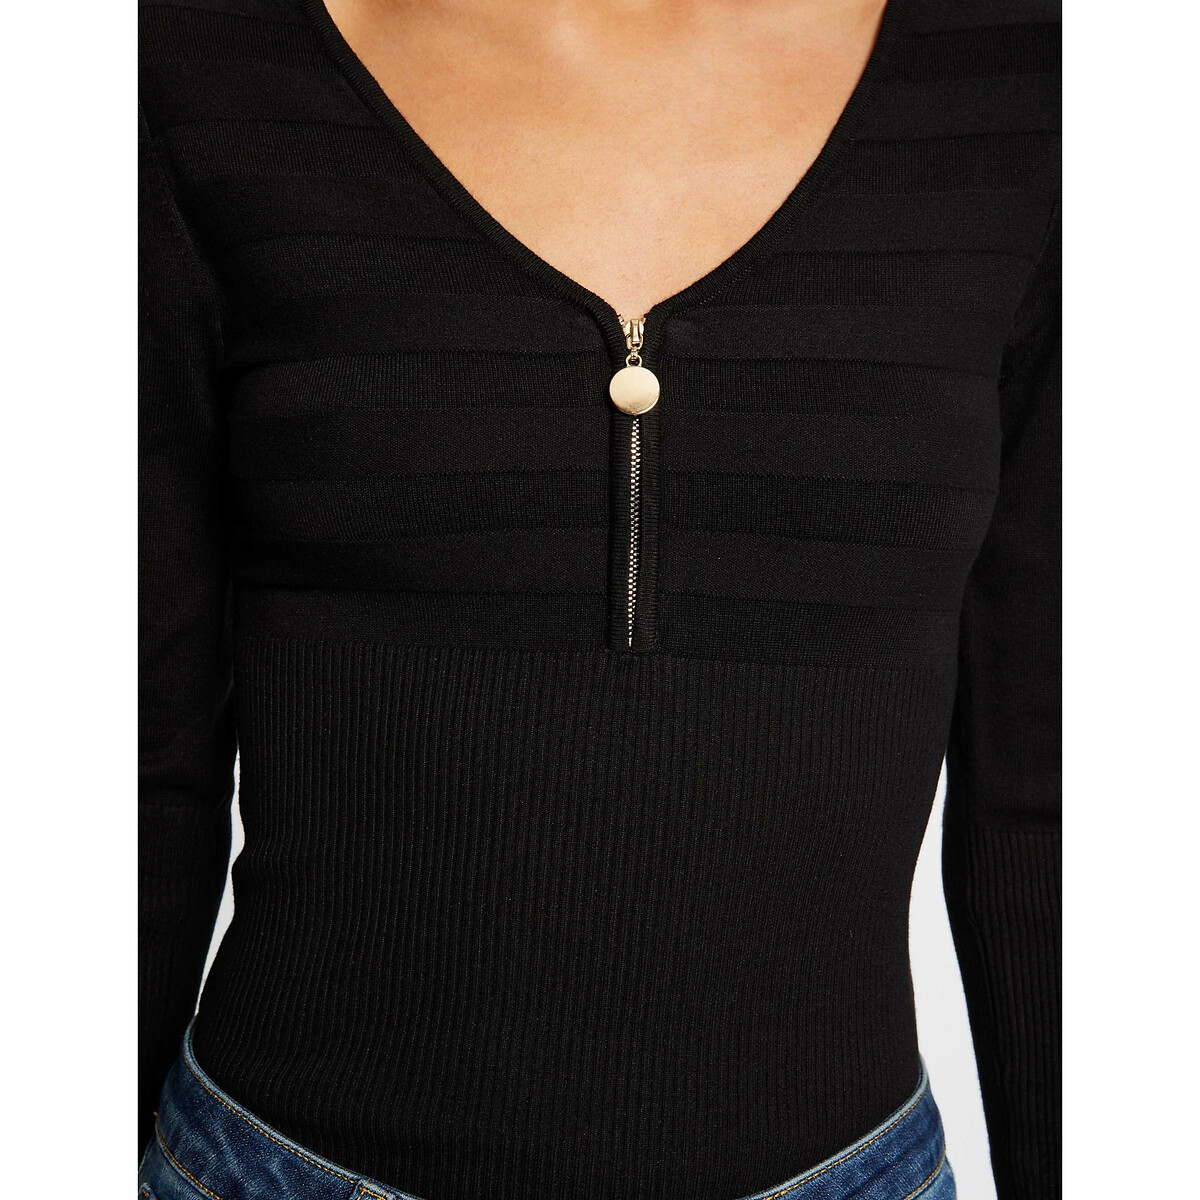 Пуловер MORGAN Пуловер С длинными рукавами застежка на молнию XS черный, размер XS - фото 4